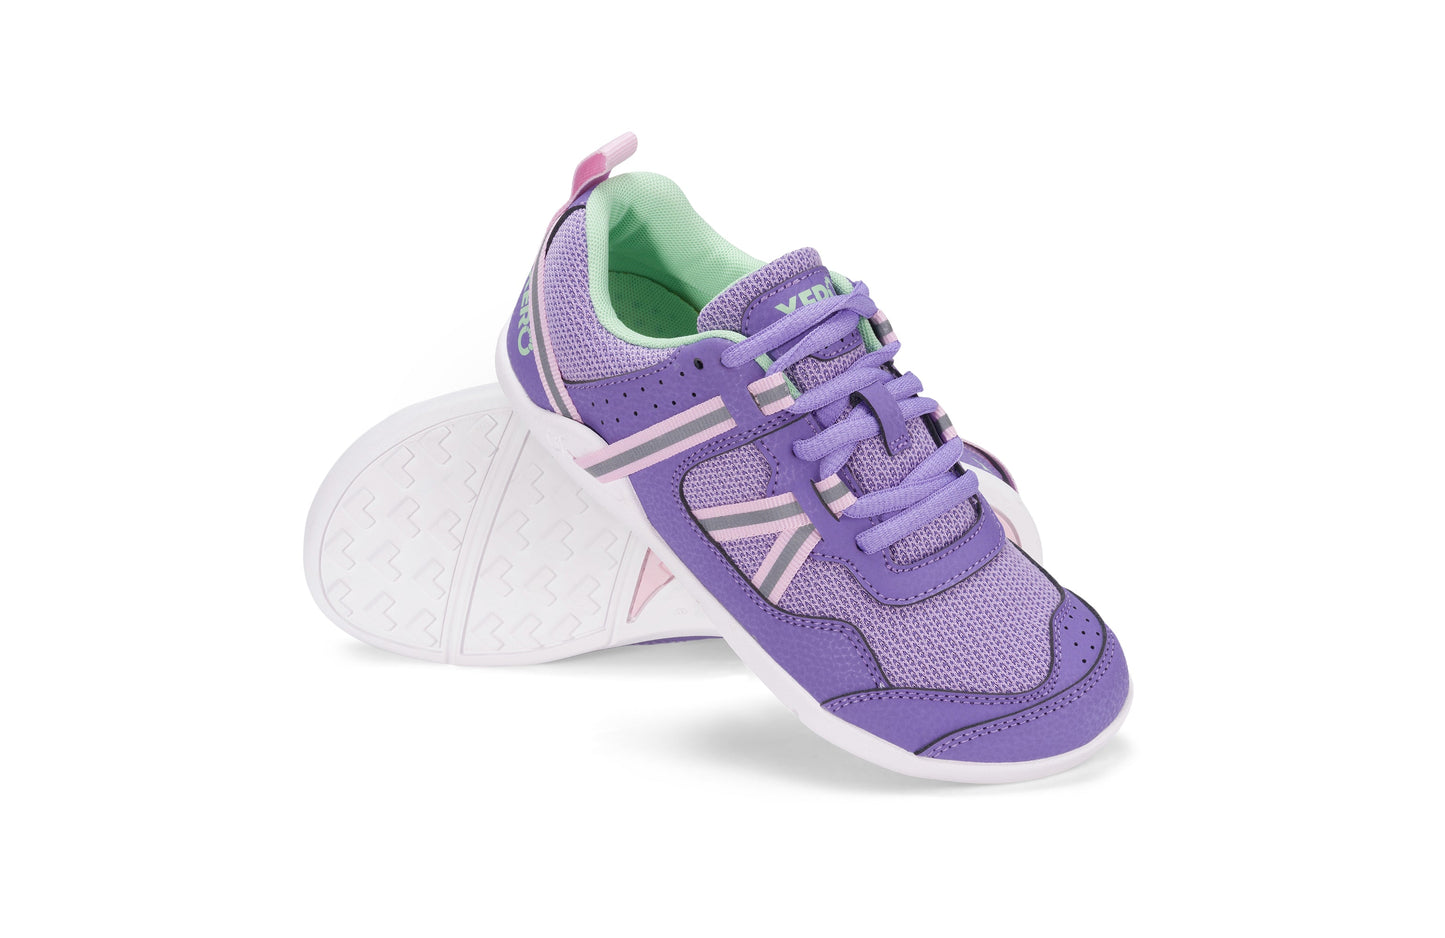 Xero Shoes Prio Kids barfods træningssko/sneakers til børn i farven lilac / pink, par